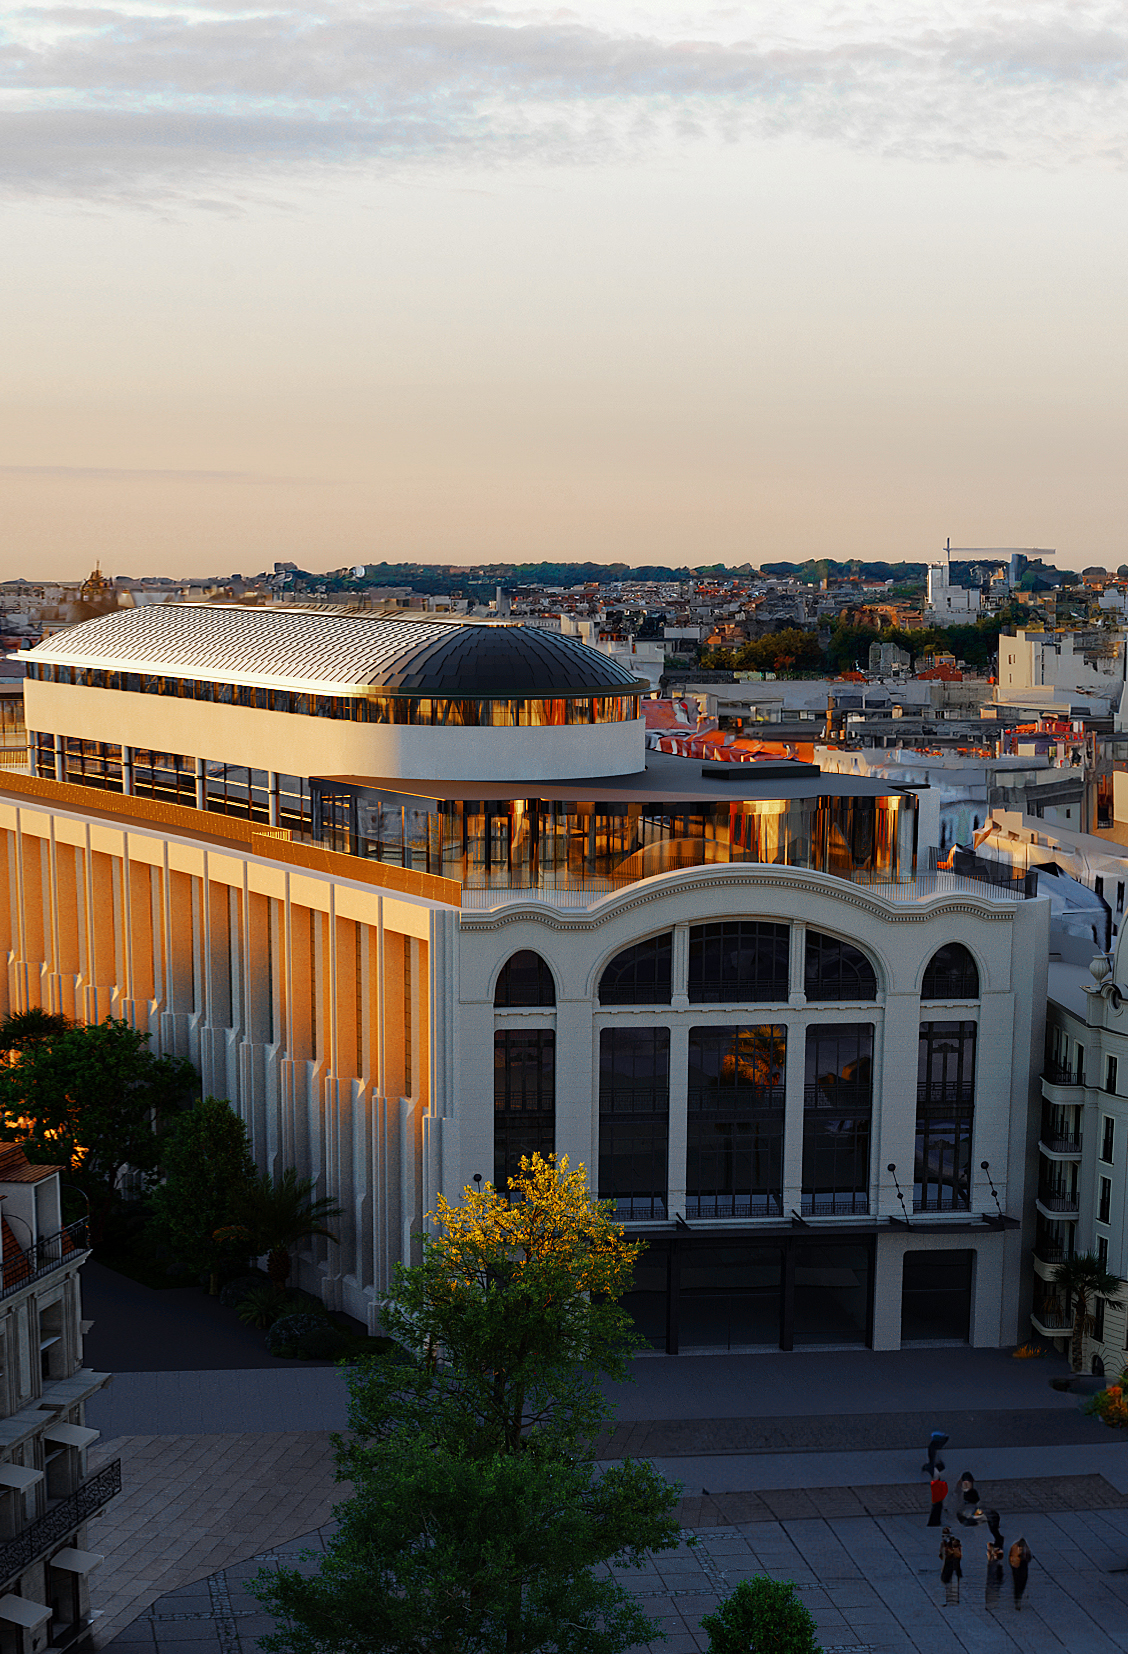 Le futur immeuble  rénové du bâtiment des Galeries Lafayette à Pau avec sa coupole - image de synthèse